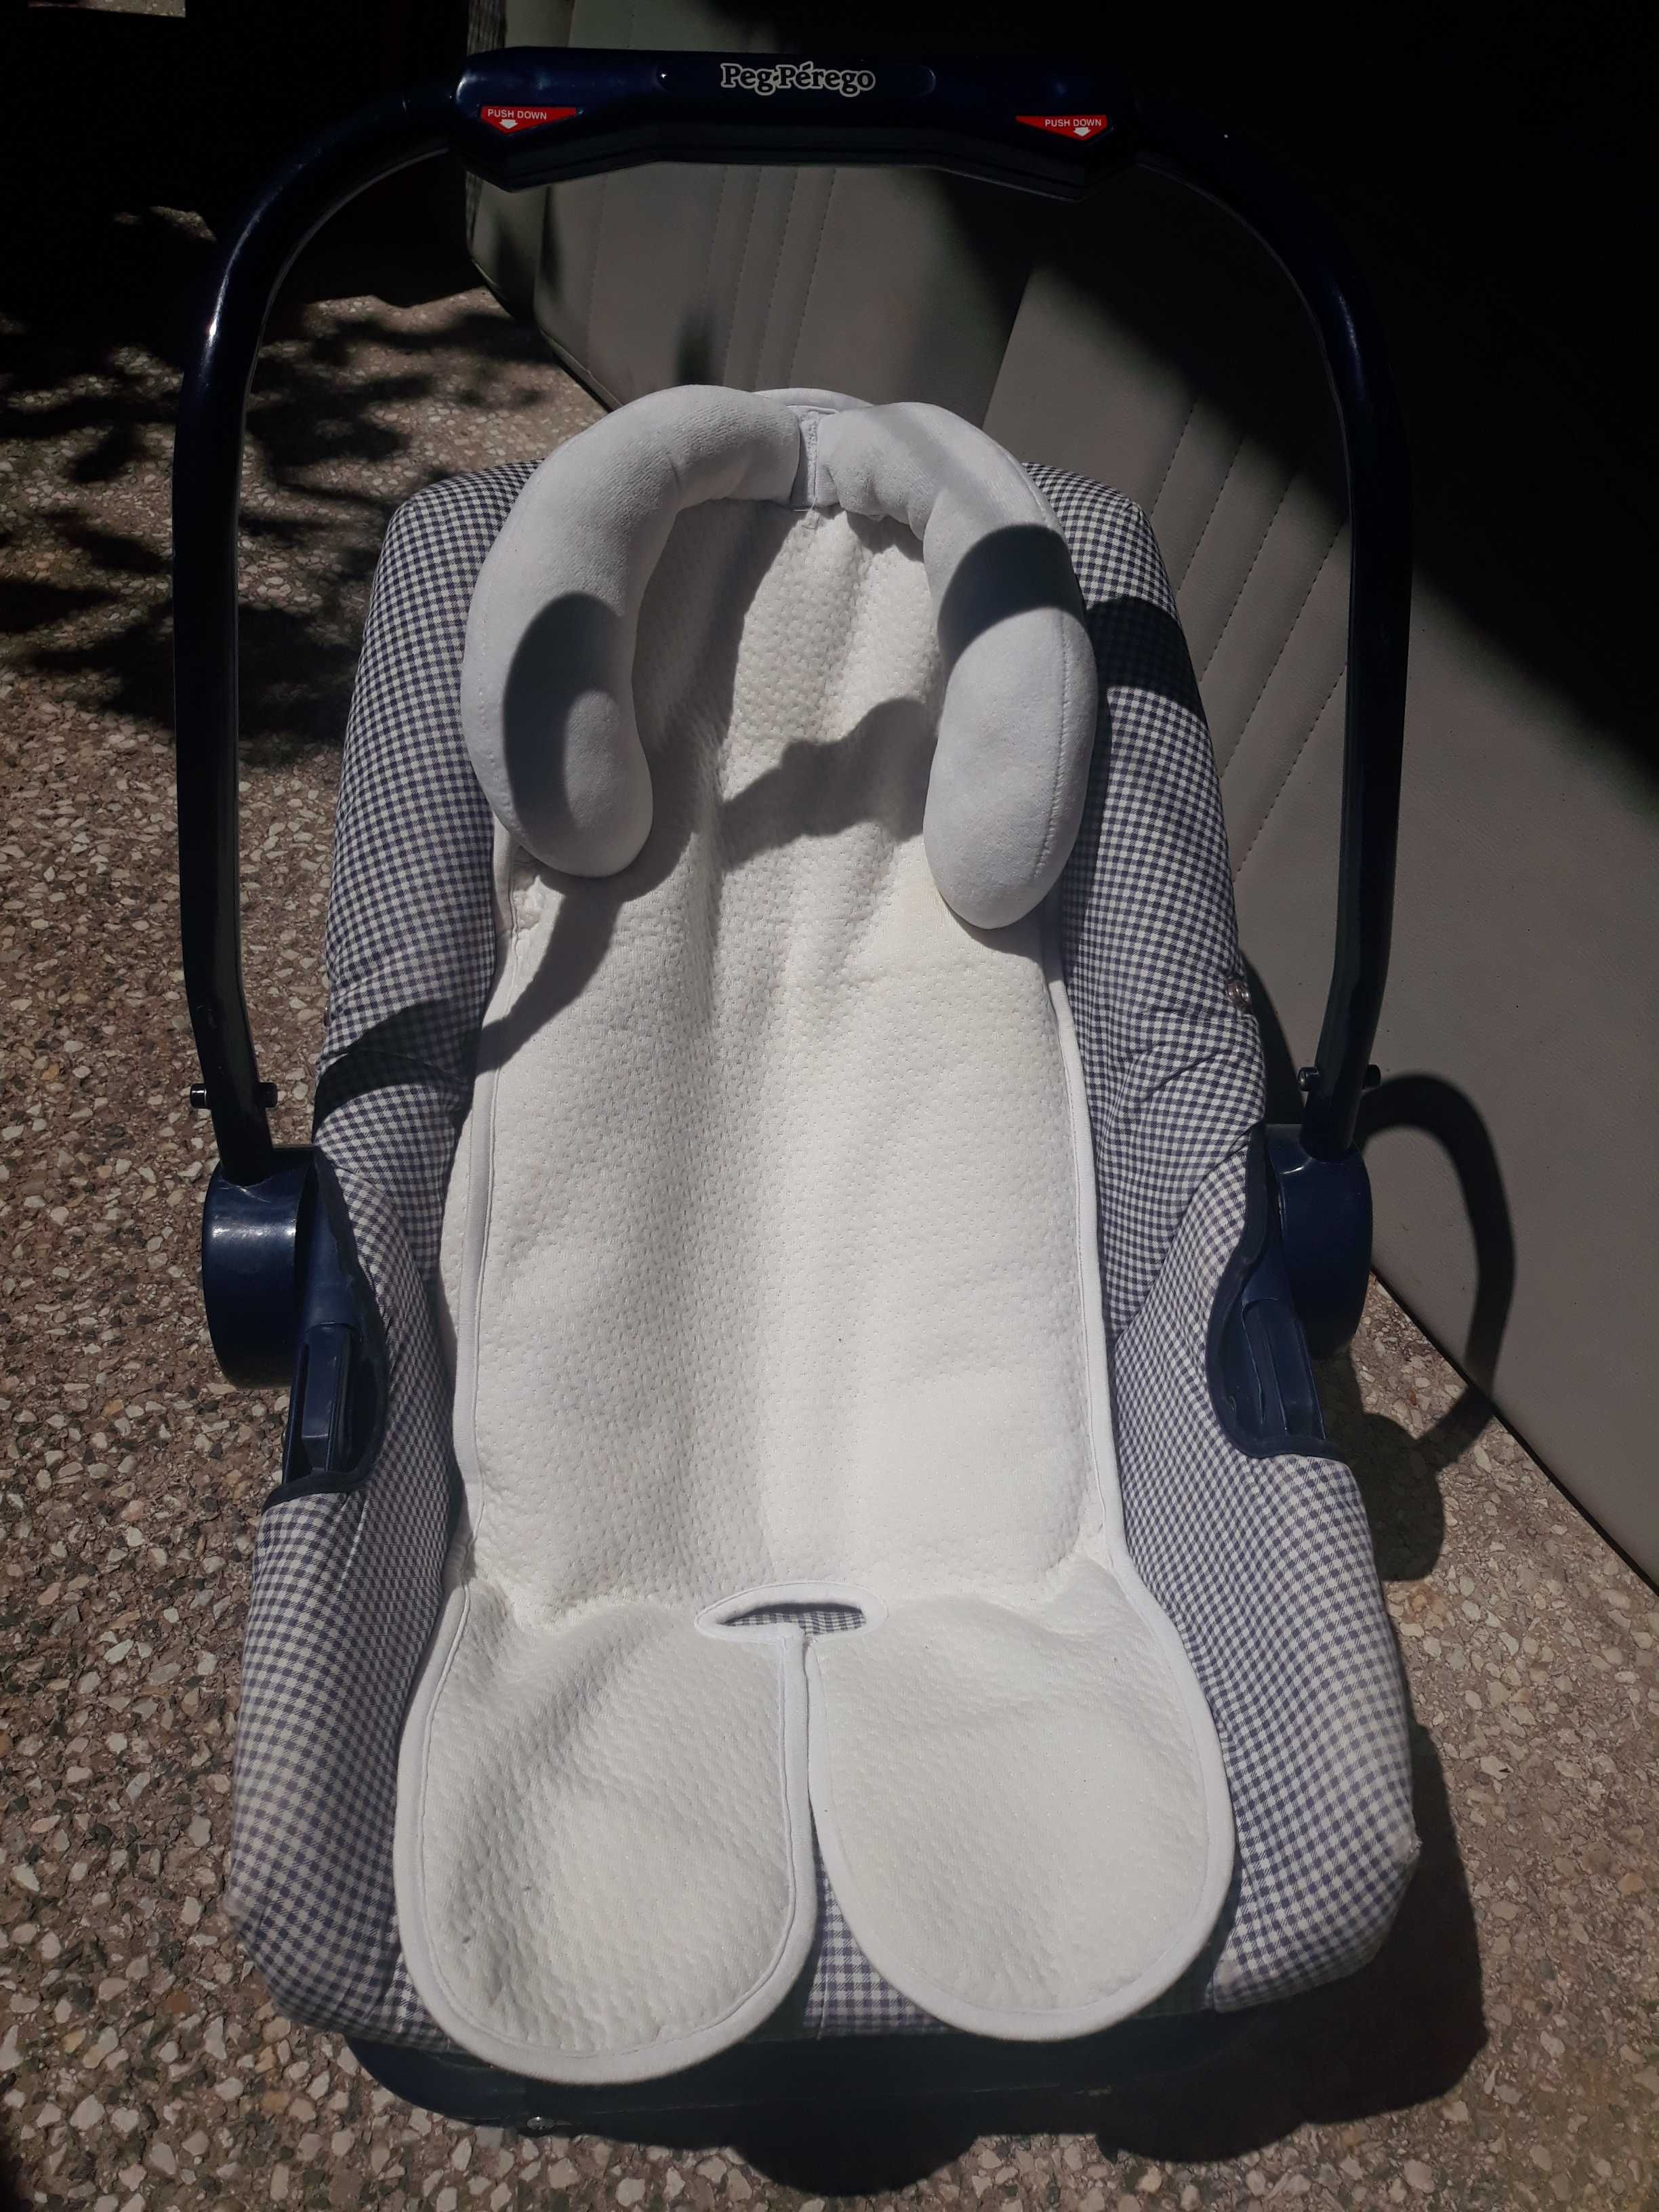 Тъмно синьо столче люлка за бебе до 10 кг, 0-6 месеца + подложка